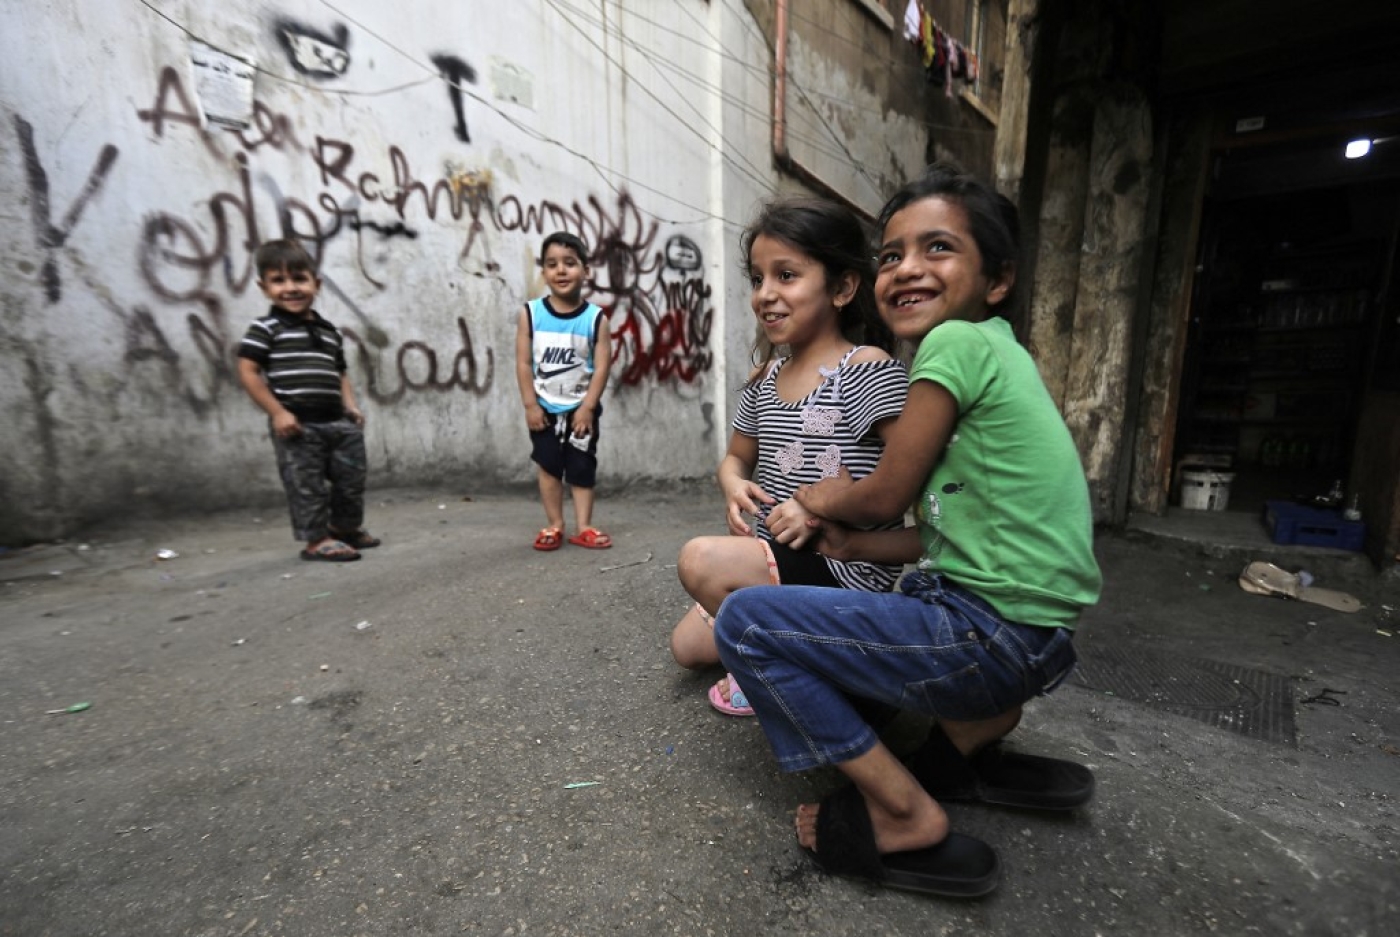 Plus de 80 % de la population libanaise vit sous le seuil de pauvreté et 42 % souffre d’un état de pauvreté extrême (AFP/Joseph Eid)